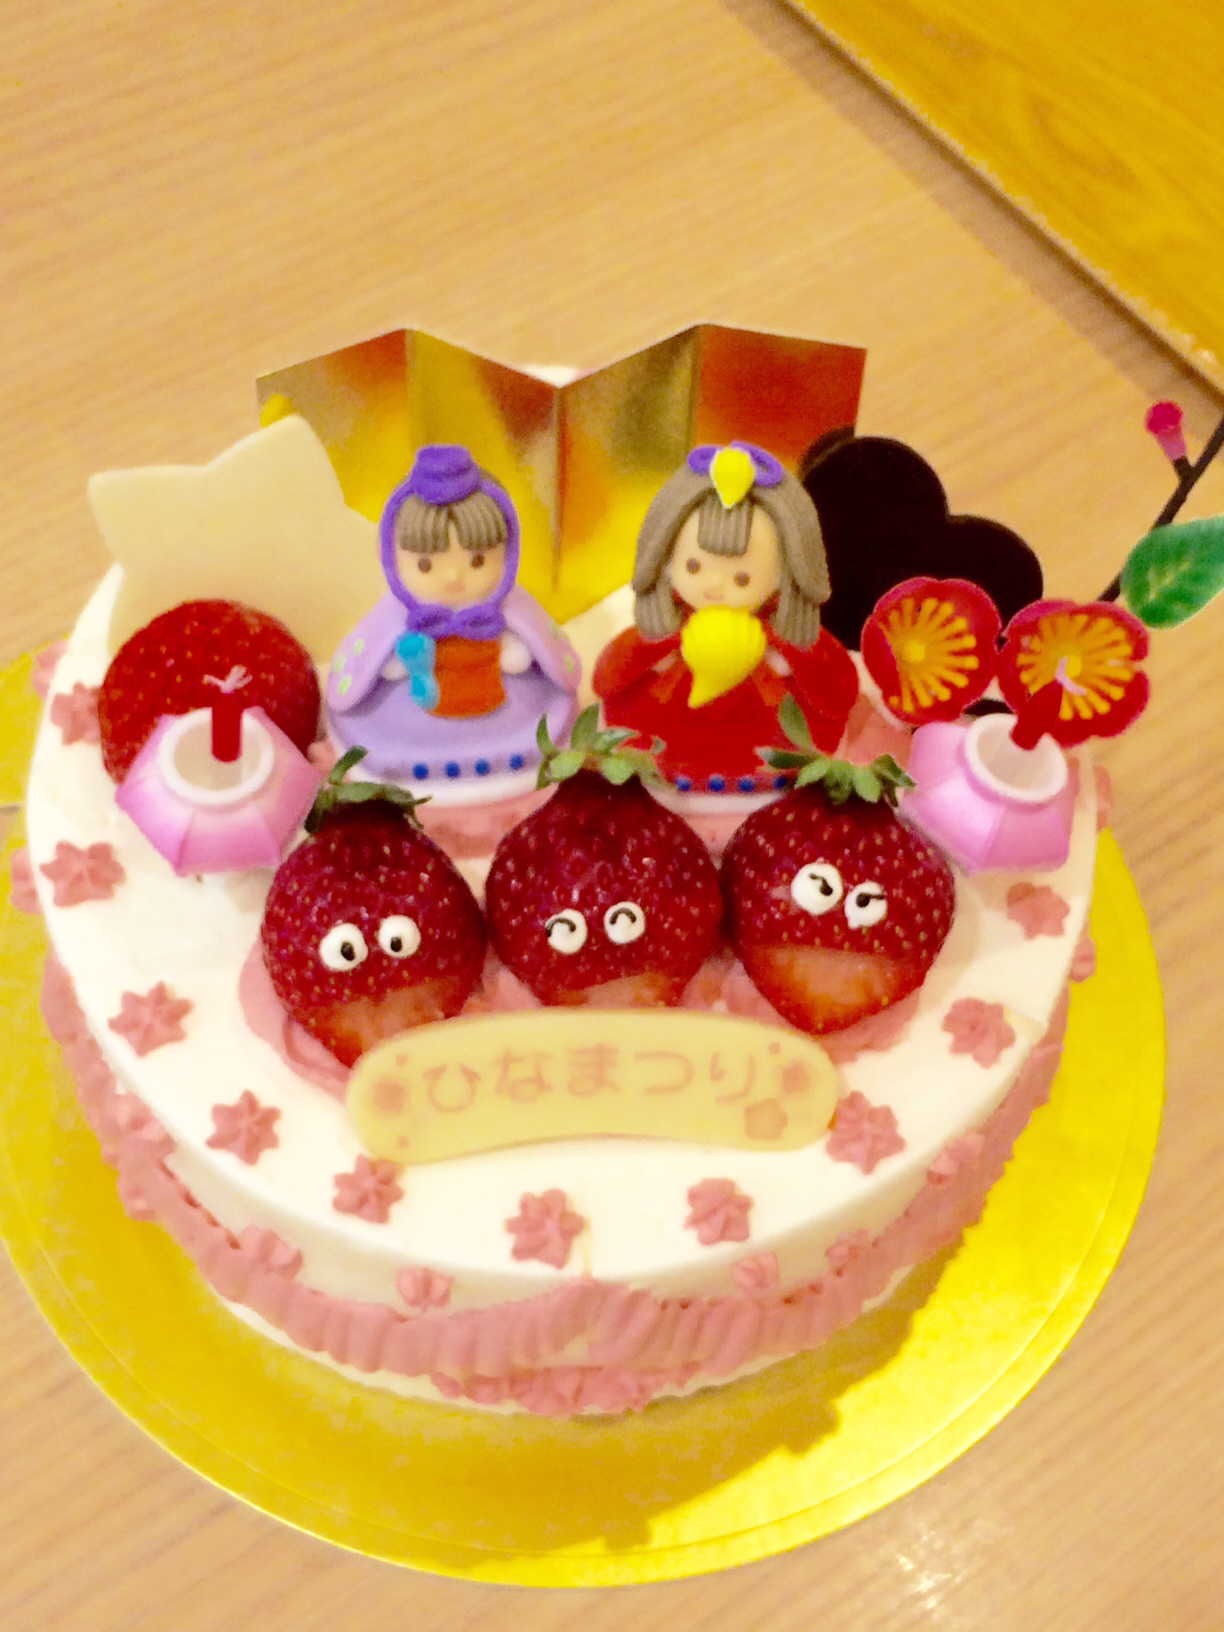 ひな祭りデコレーションケーキ予約受付中 高槻のケーキ屋で健康志向のpatisserie Yushin パティスリー遊心